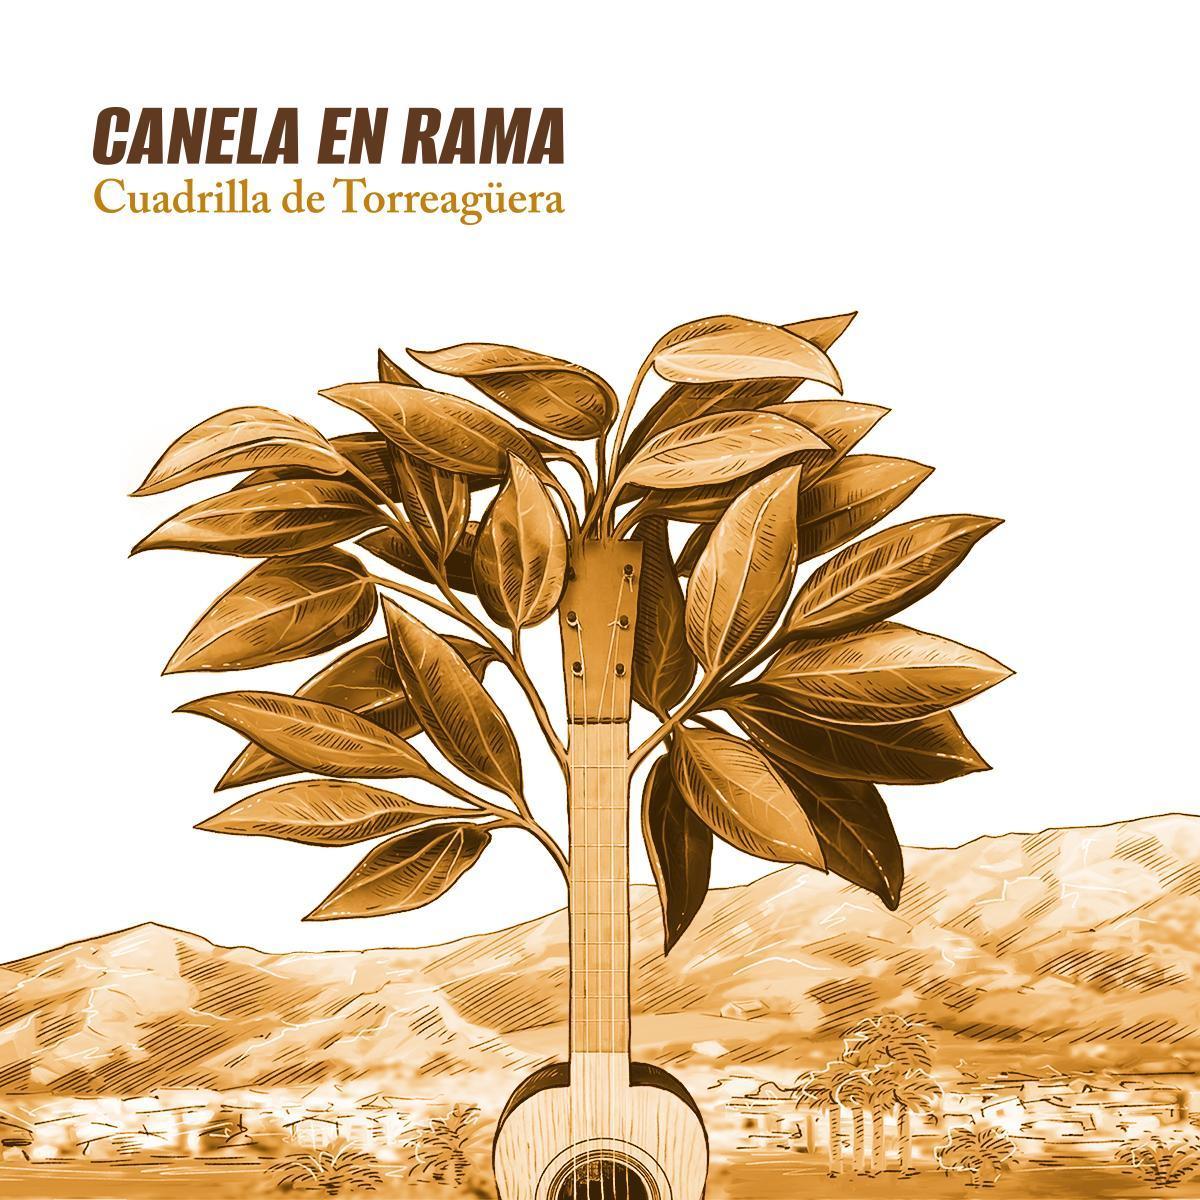 Portada de Canela en rama, el nuevo disco de la Cuadrilla de Torreagüera.